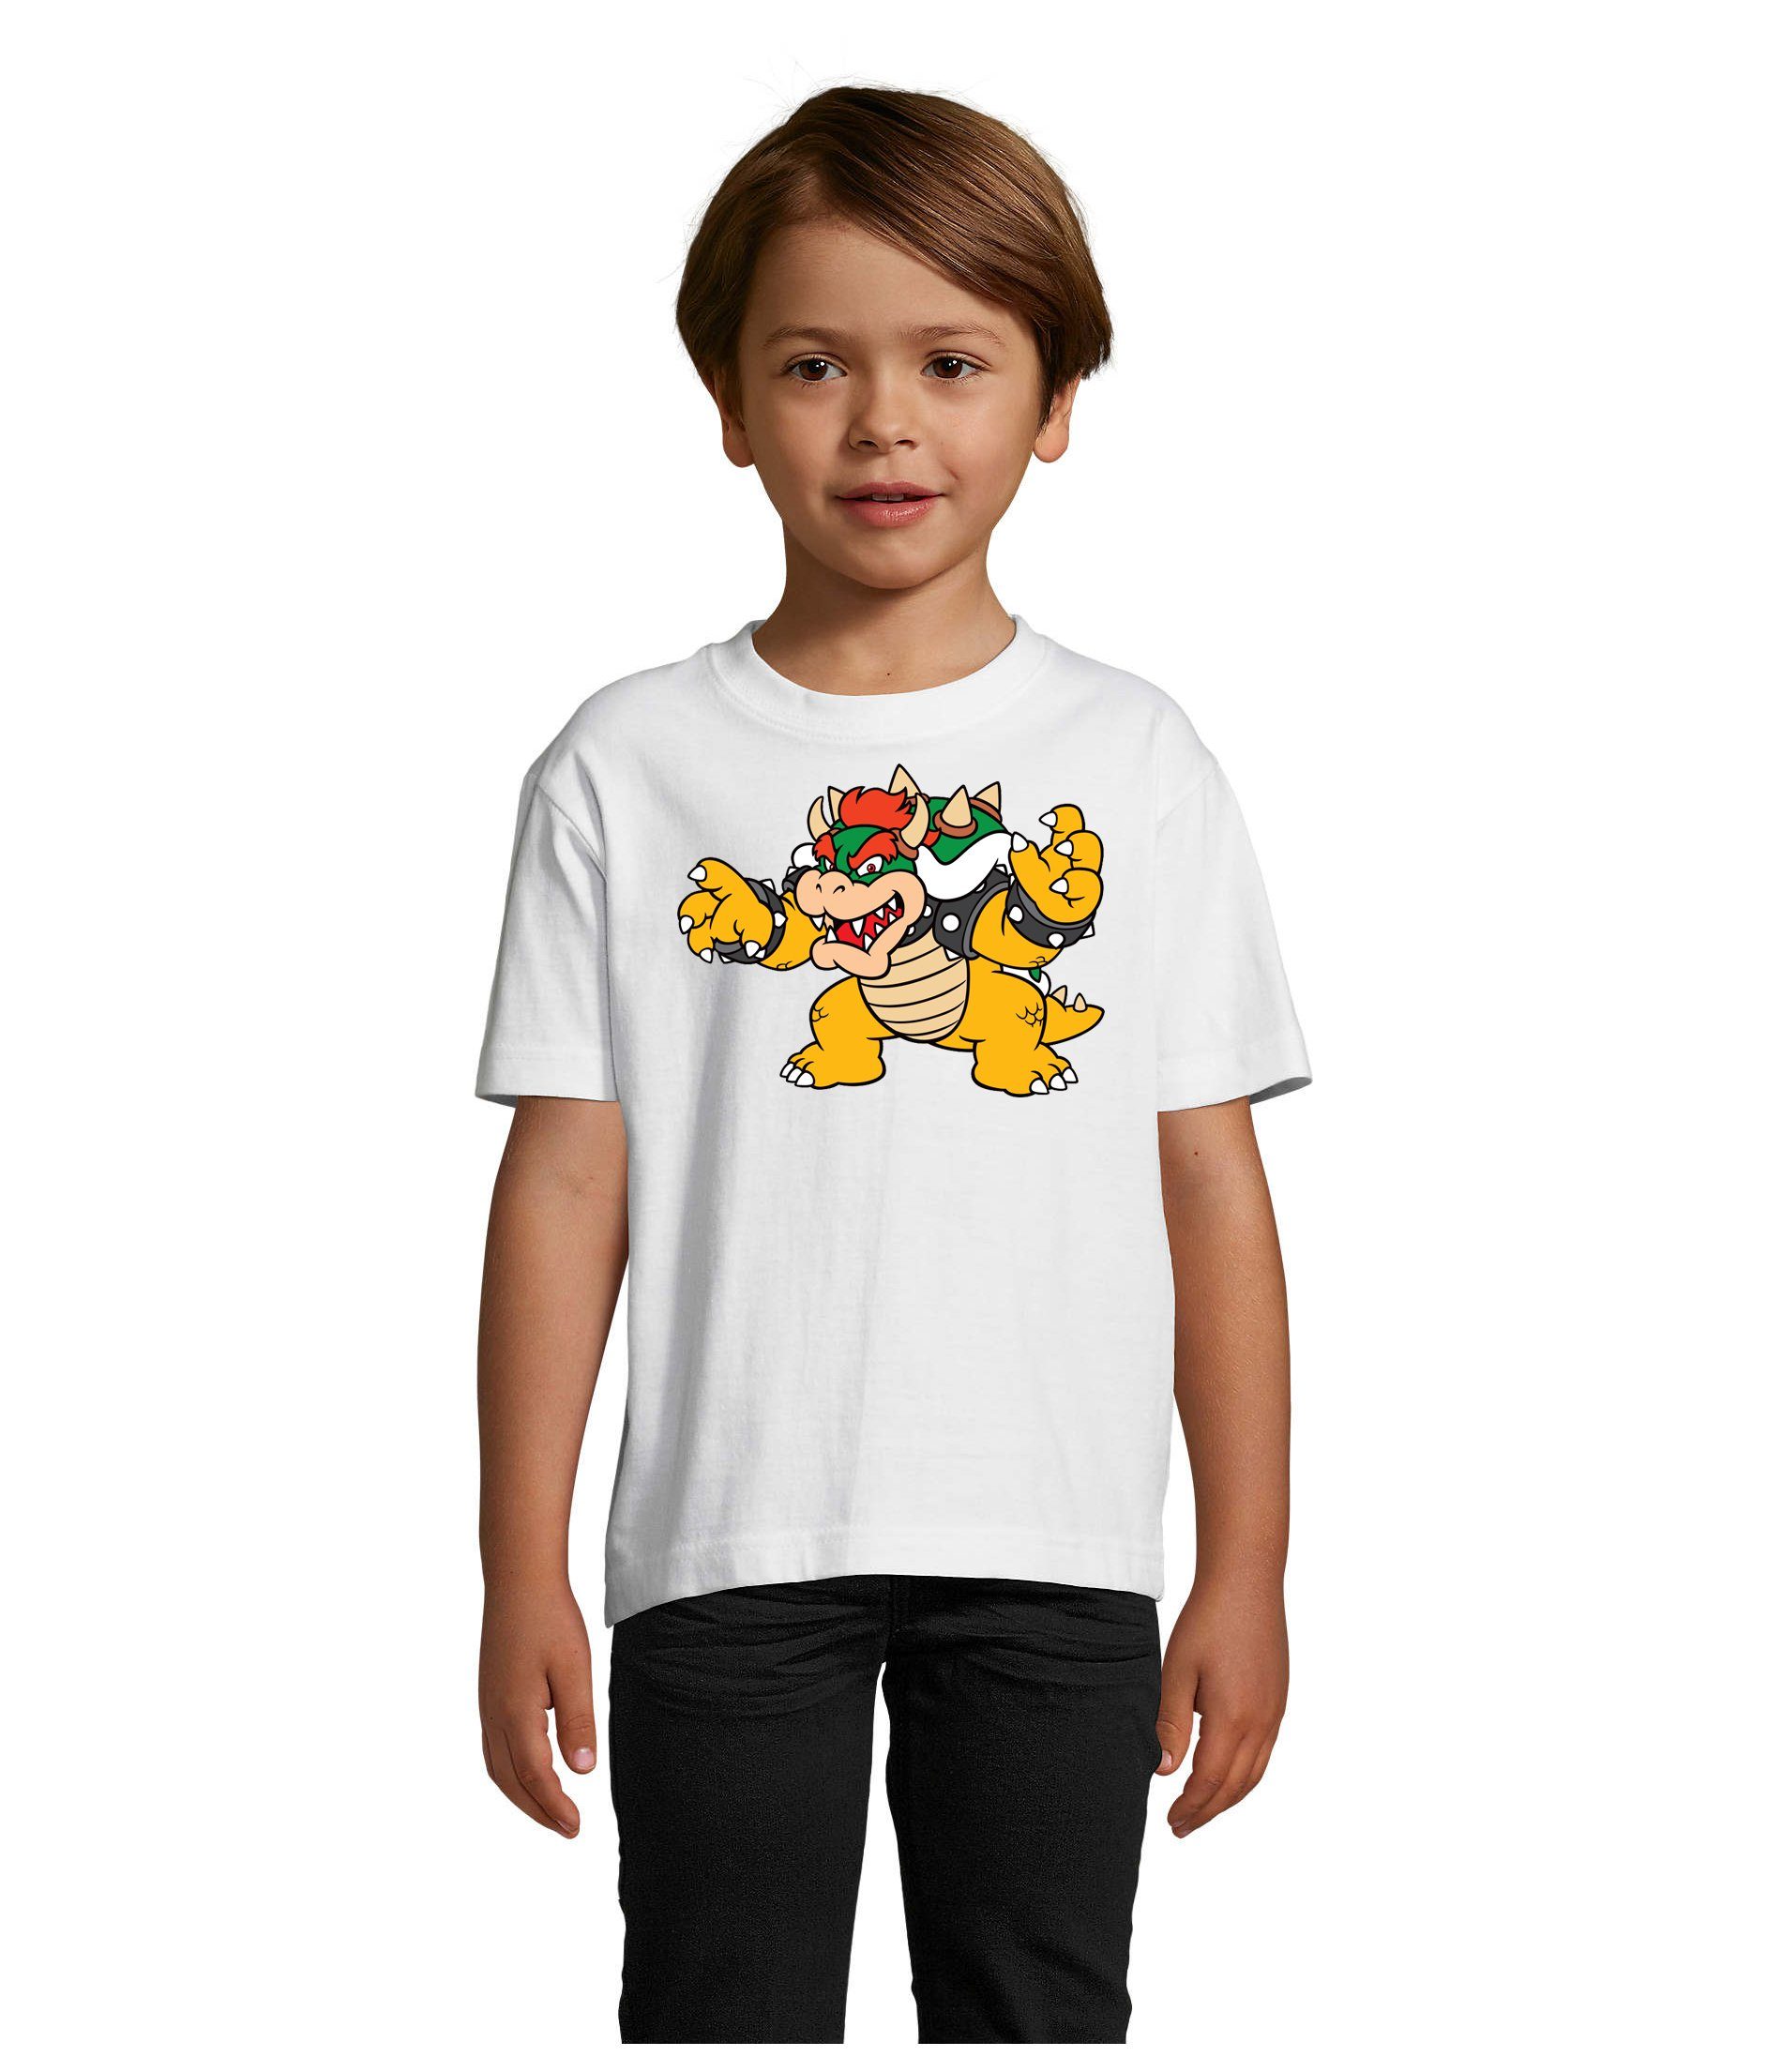 Gamer Brownie Luigi & Yoshi Bowser Weiss Konsole Game Blondie T-Shirt Mario Kinder Nintendo